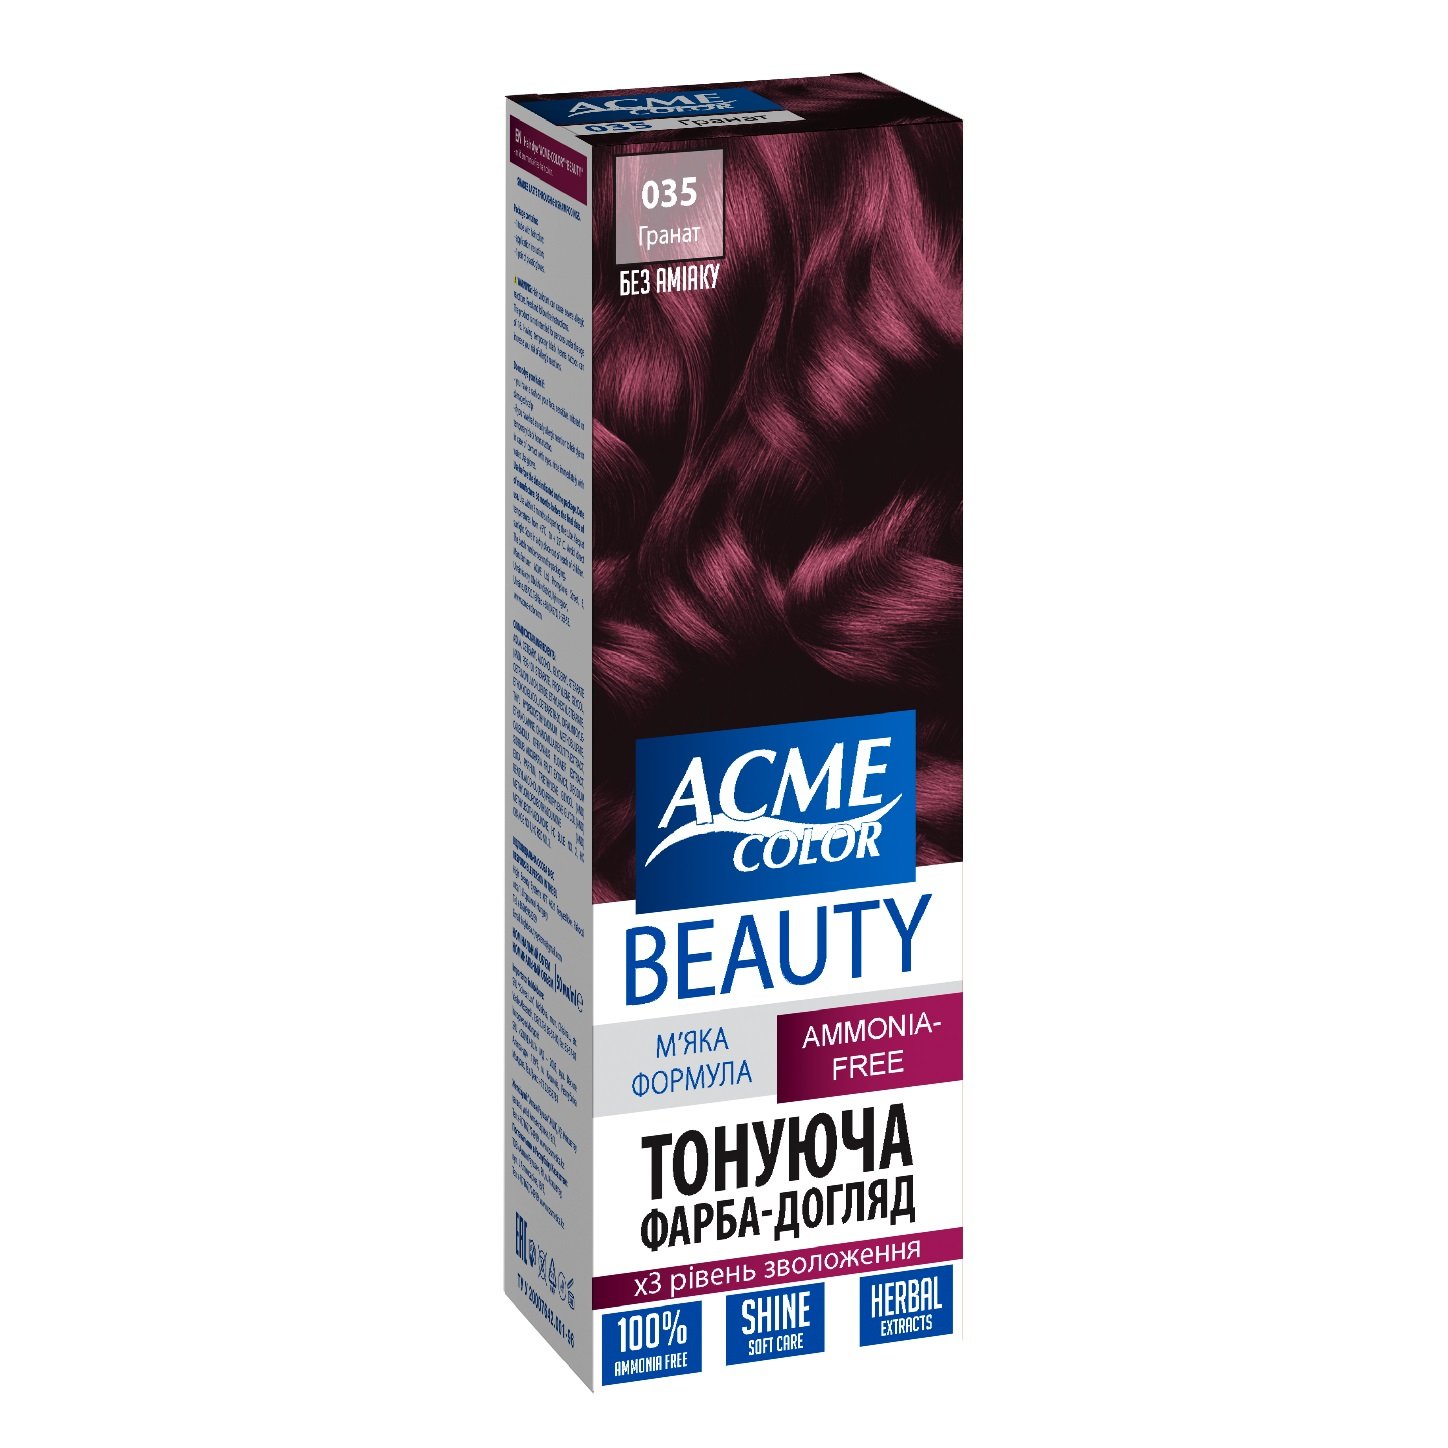 Гель-фарба для волосся Acme-color Beauty, відтінок 035 (Гранат), 69 г - фото 1